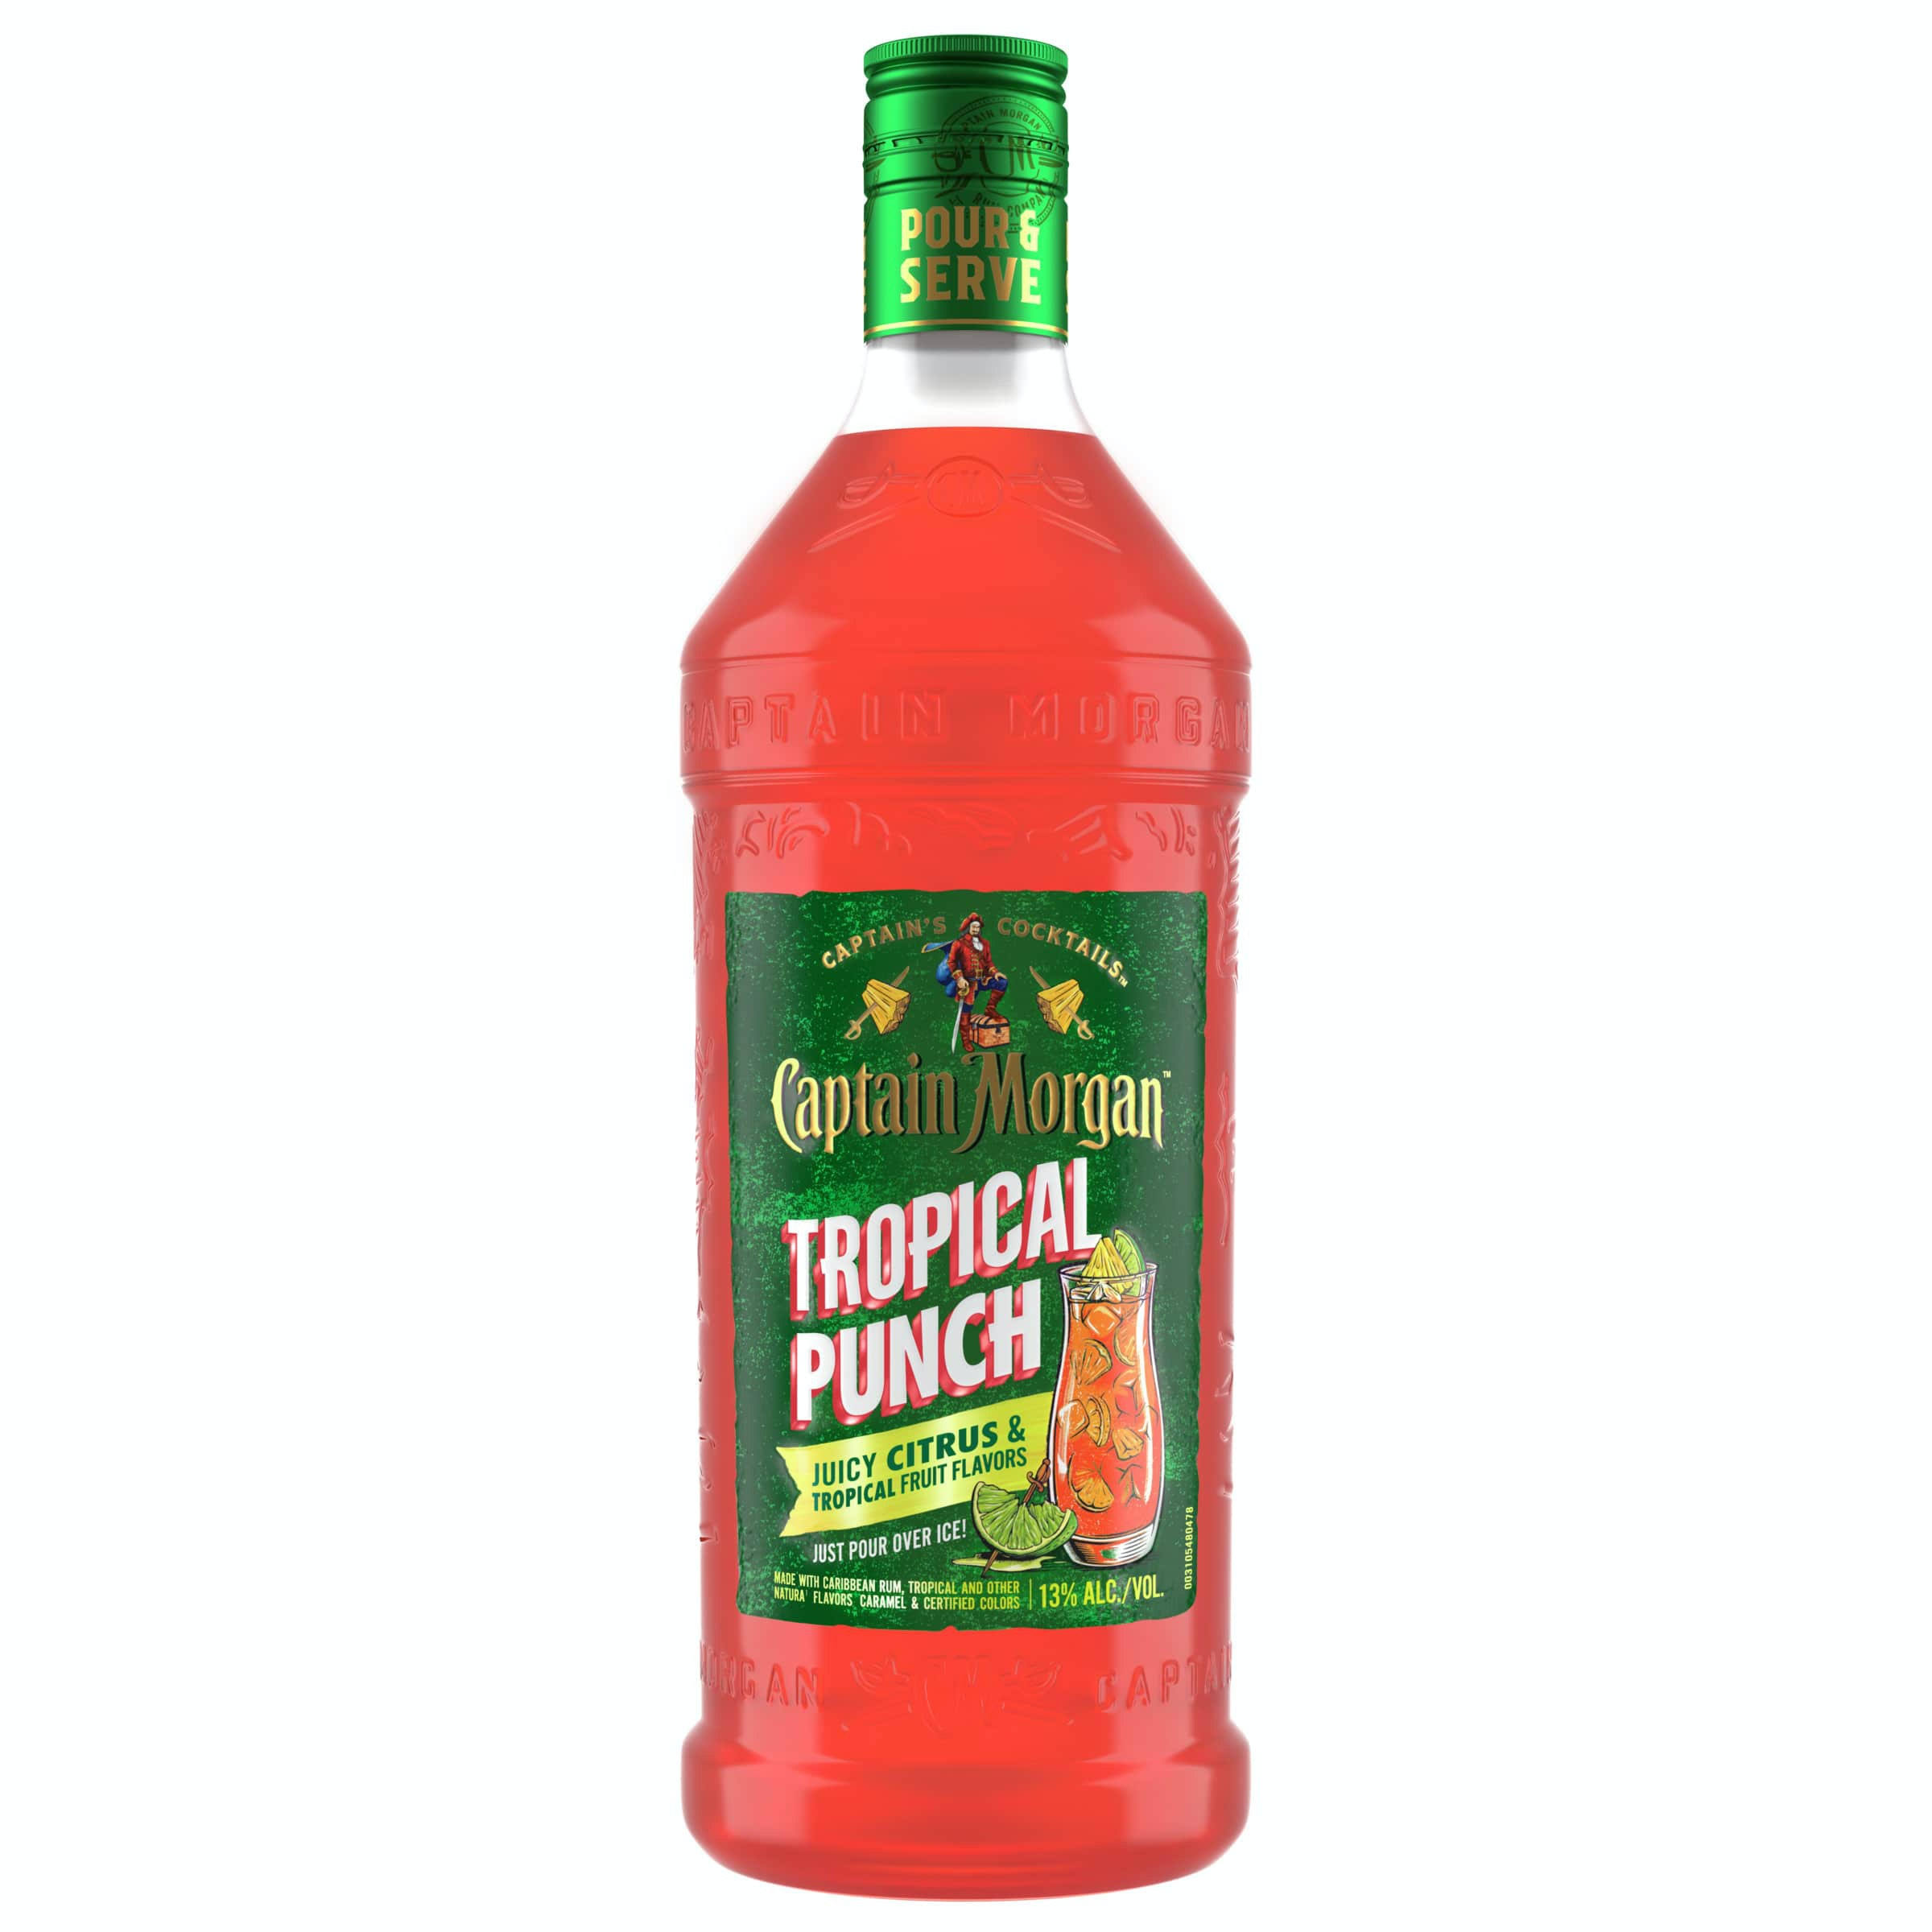 Captain Morgan Tropical Punch, Juice Citrus & Tropical Fruit Flavor - 1.75 l